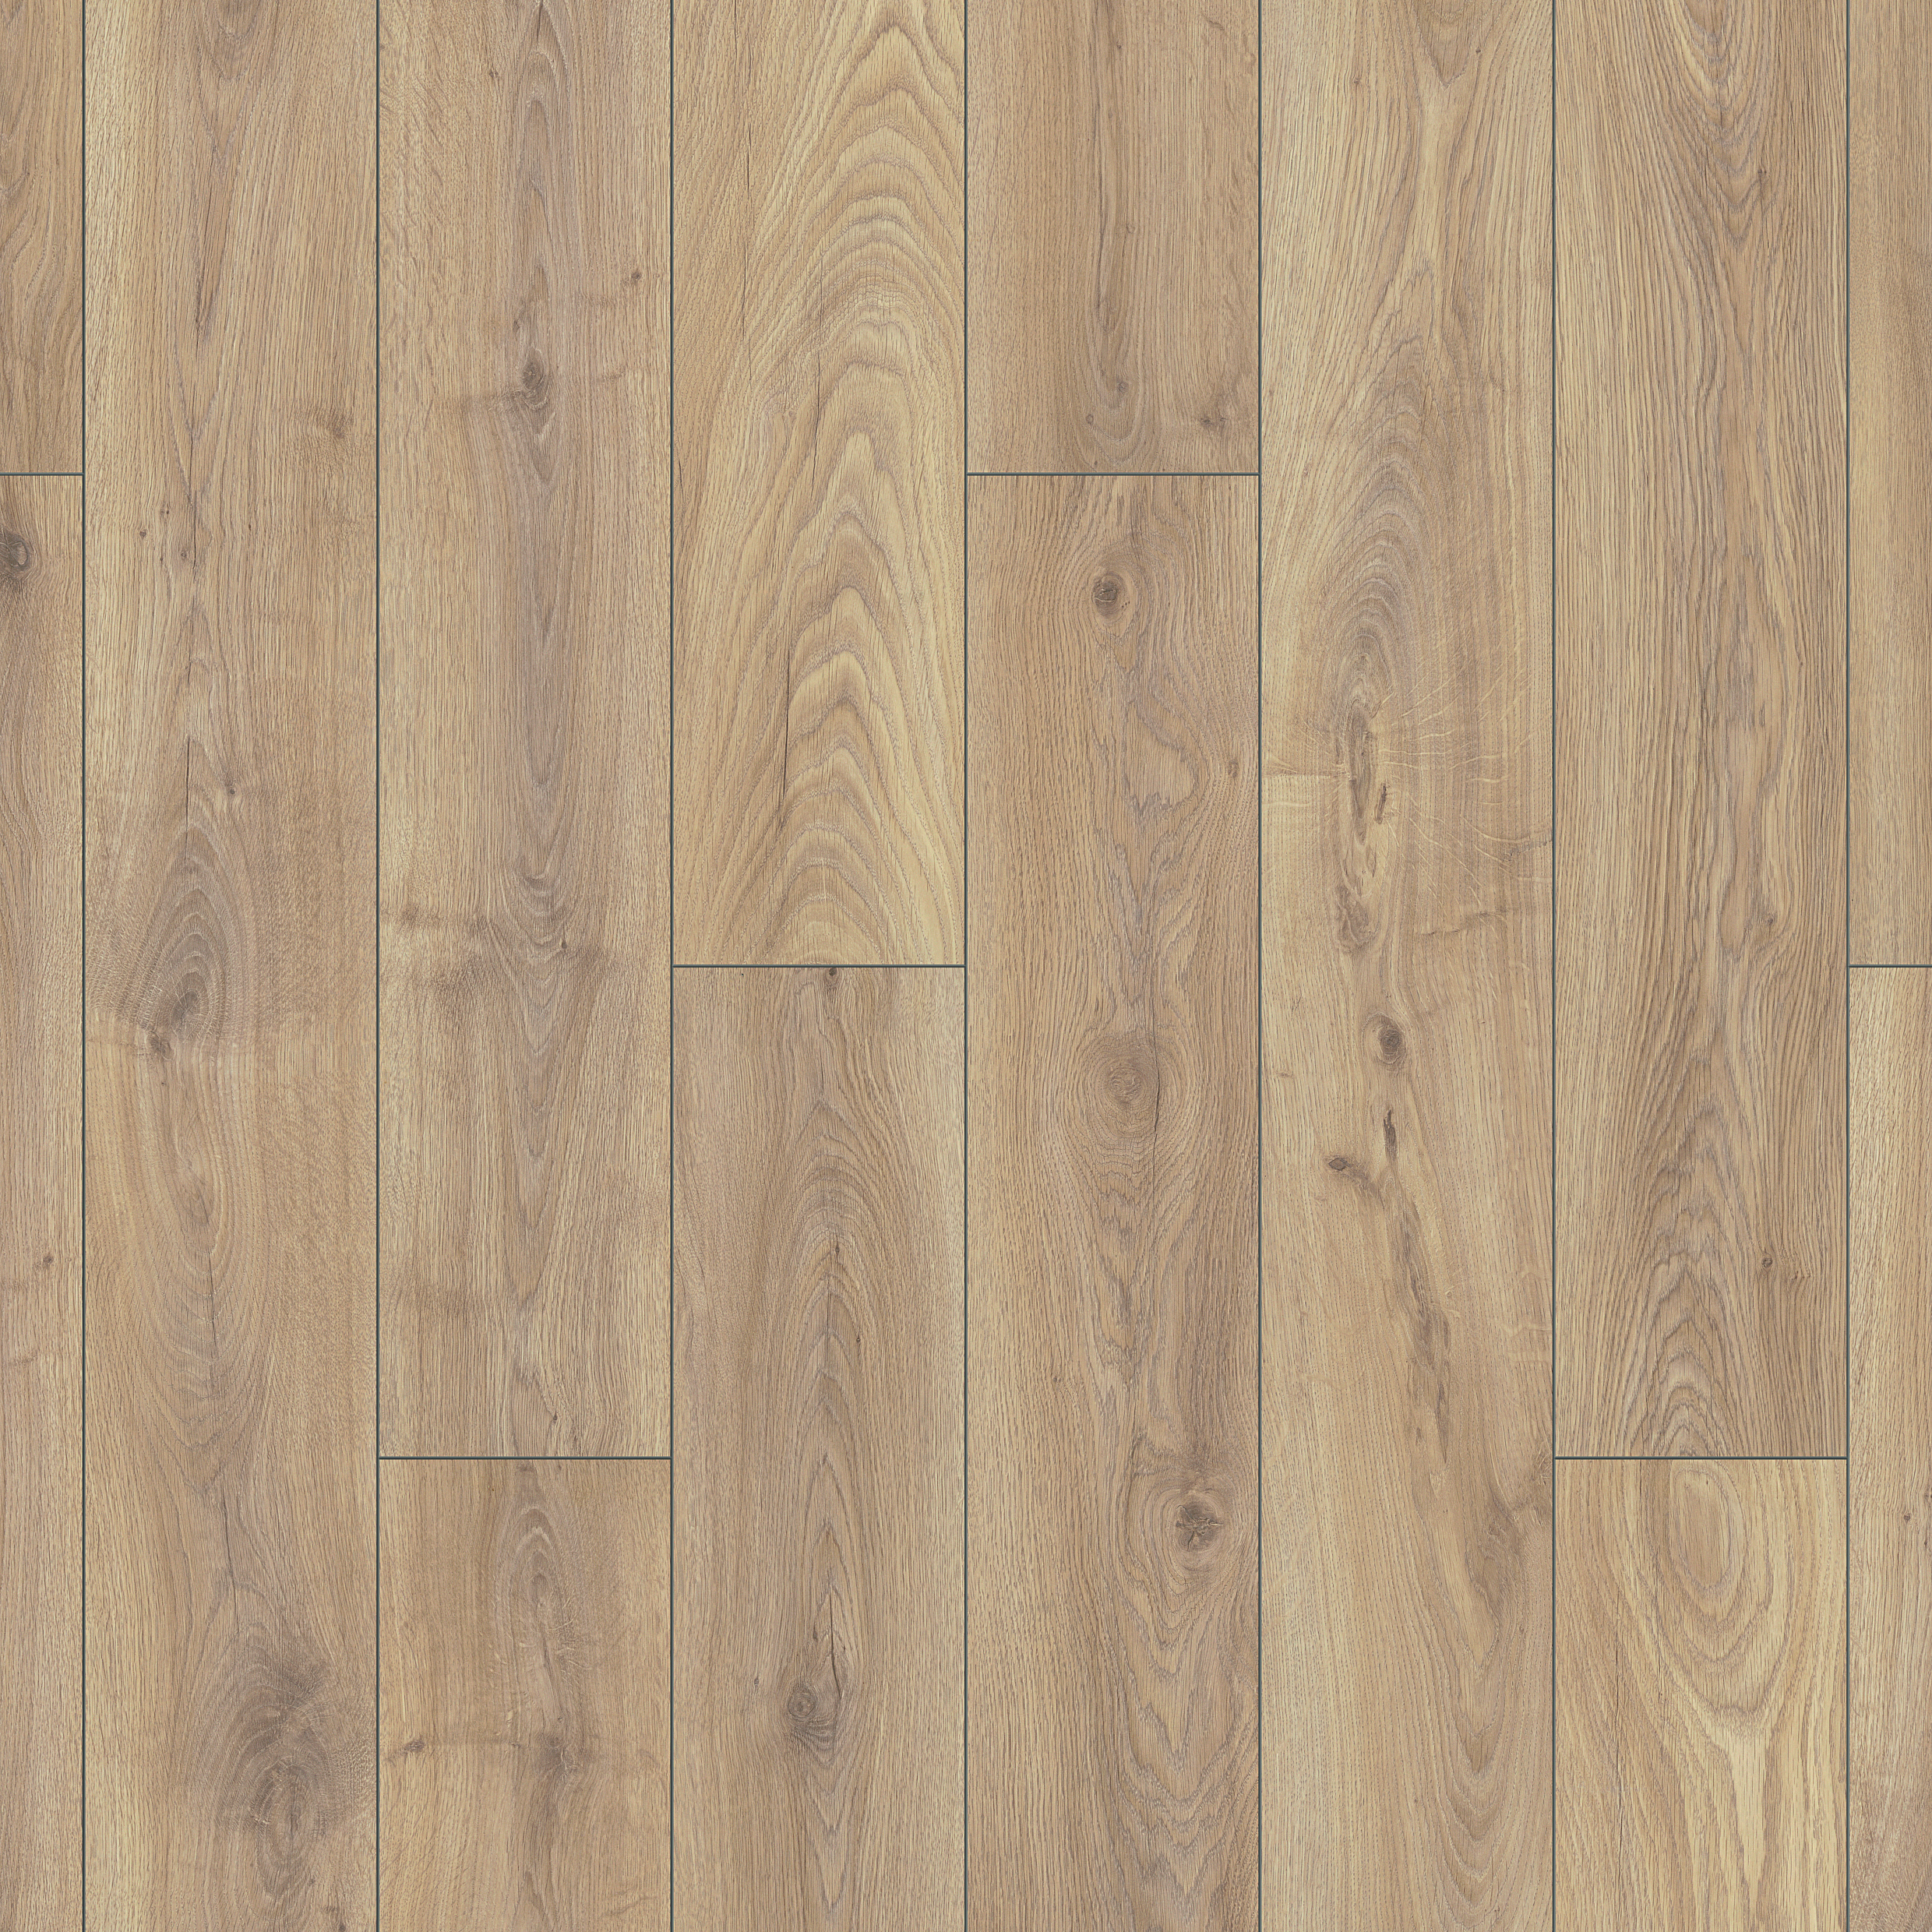 Clovelly Light Oak 12mm Laminate Flooring - 1.48m2